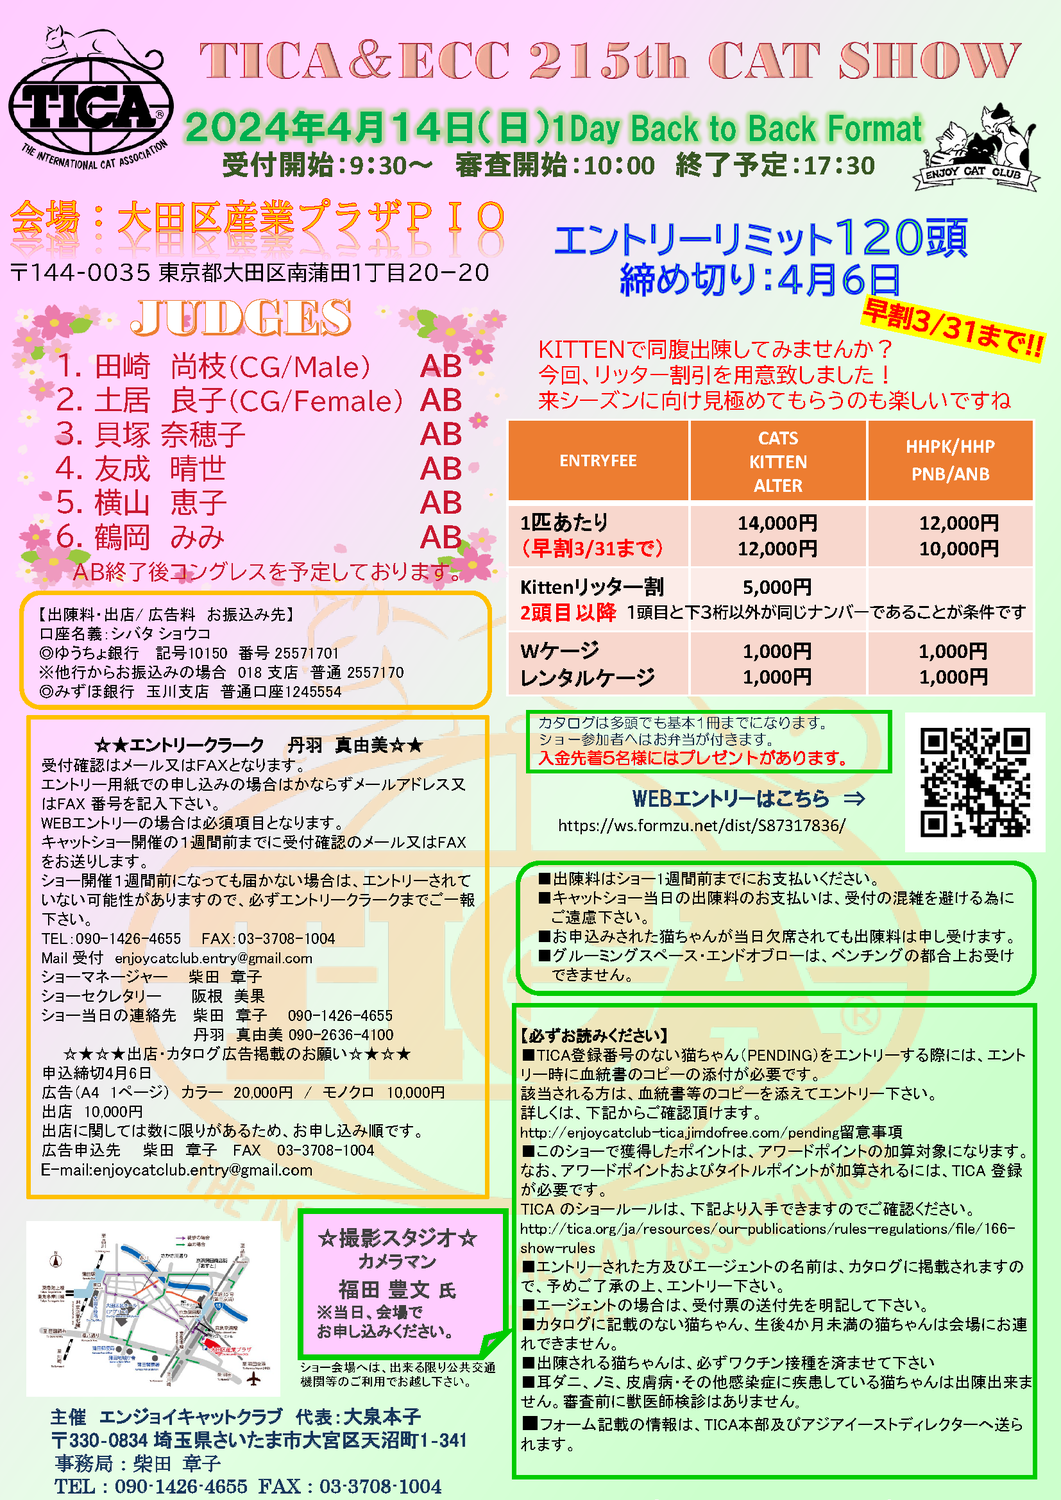 【エントリーリミット120頭】TICA&ECC 215th Cat Show【大田区産業プラザPIO】